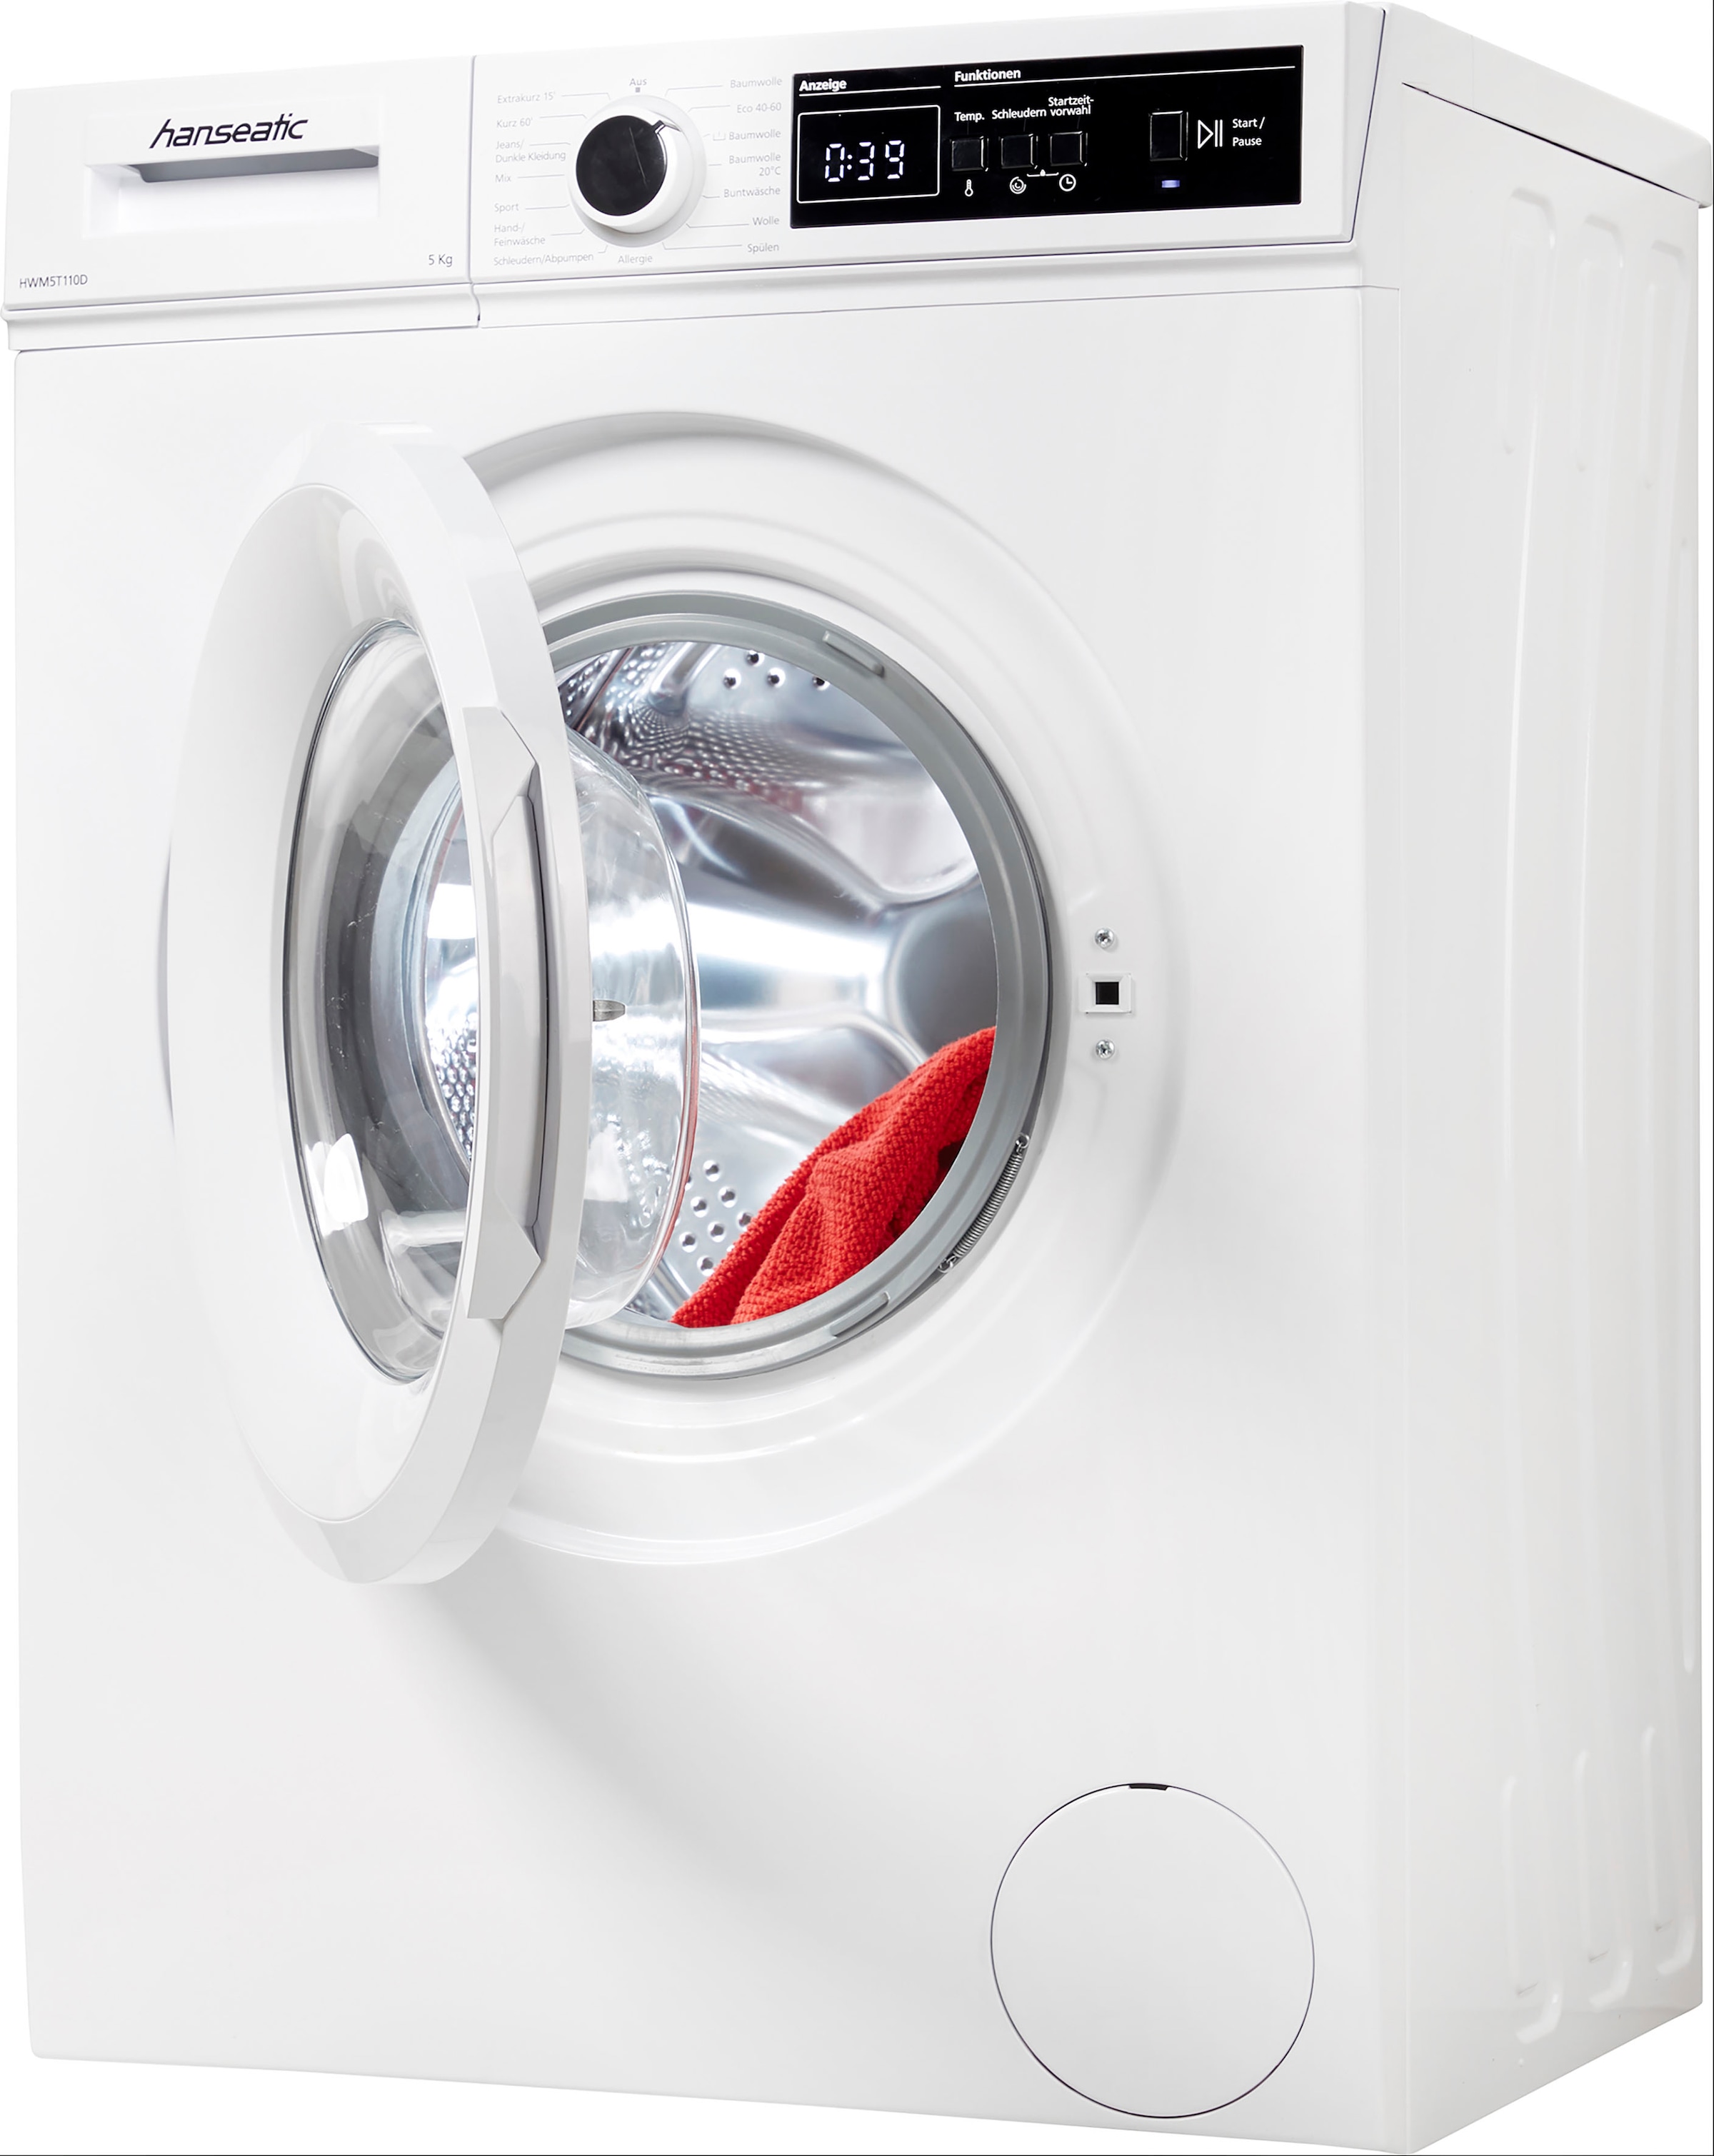 Hanseatic Waschmaschine, mit U/min, 3 Jahren Allergieprogramm, Dynamische Überlaufschutzprogramm XXL Mengenautomatik, HWM5T110D, kg, Garantie 1000 5